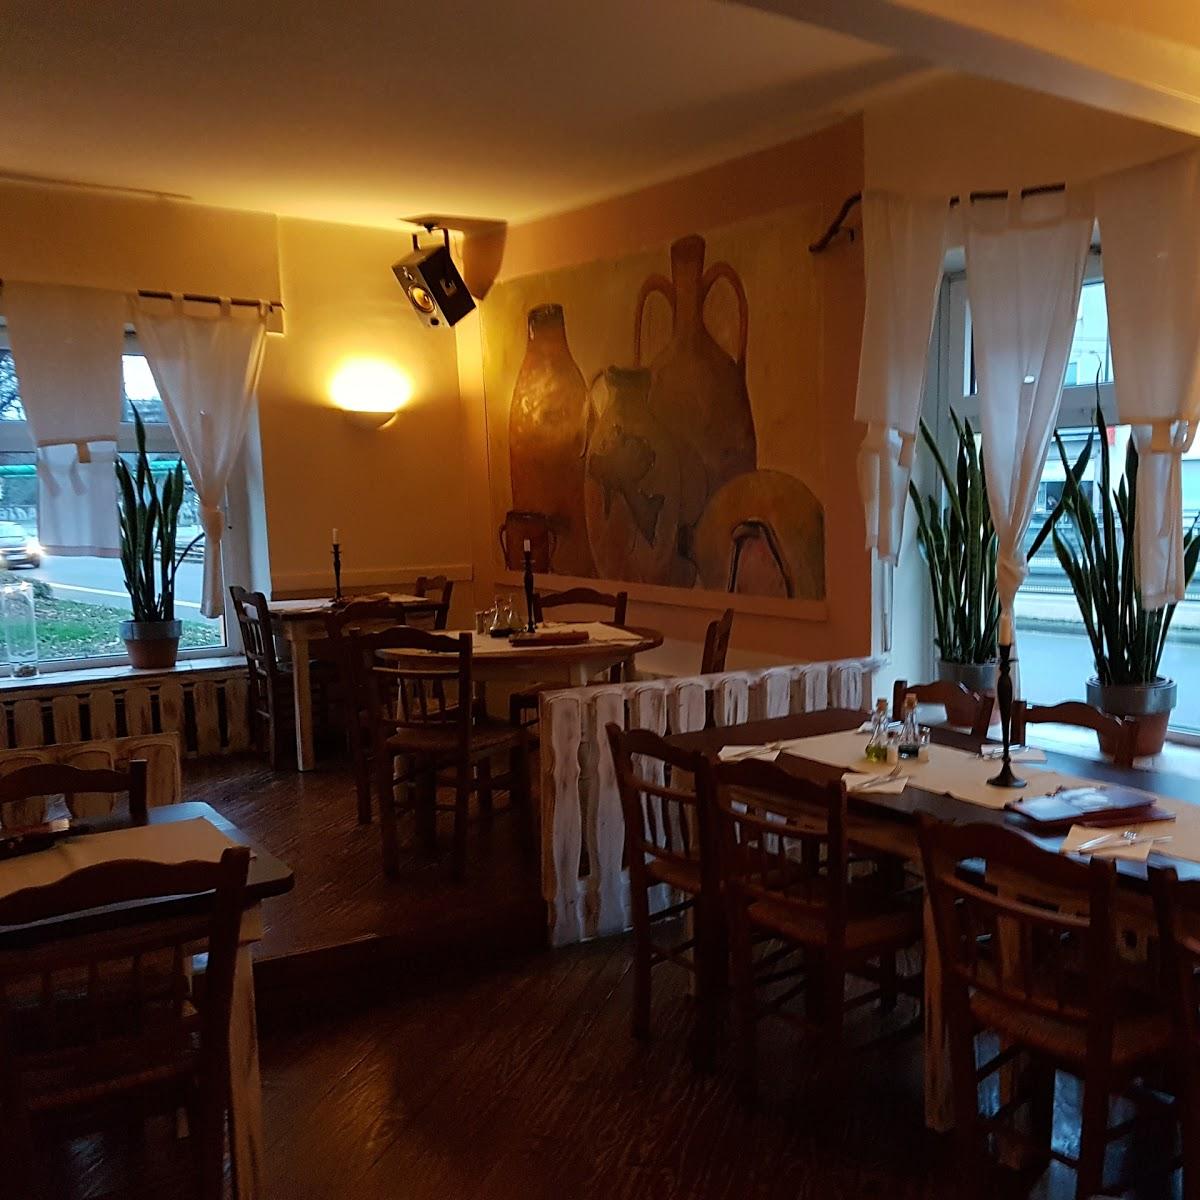 Restaurant "Taverne Epsilon" in Dortmund